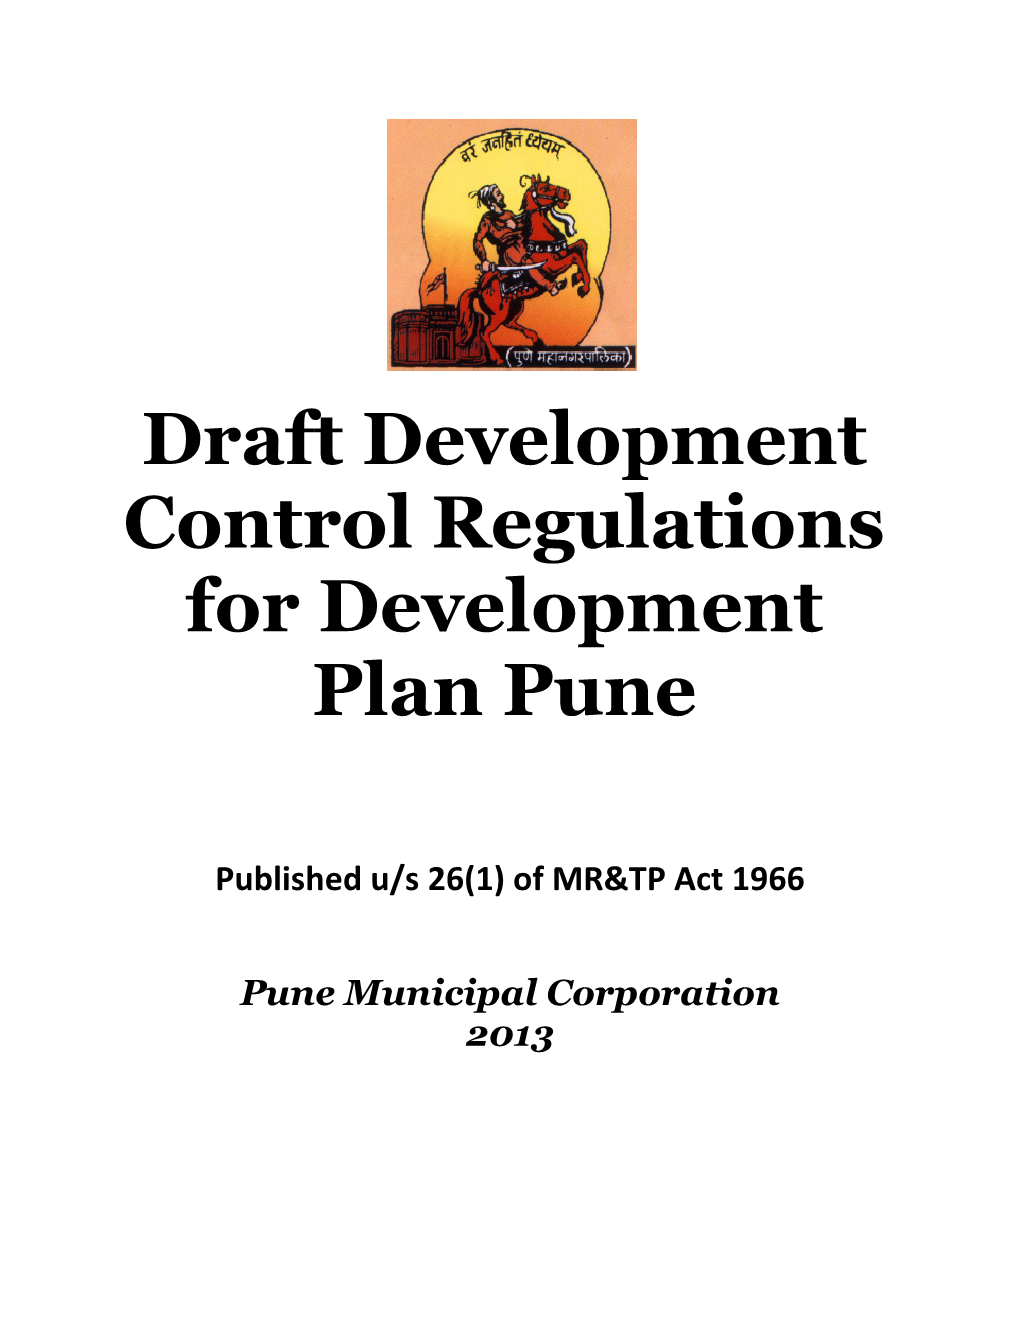 Draft Development Control Regulations for Development Plan